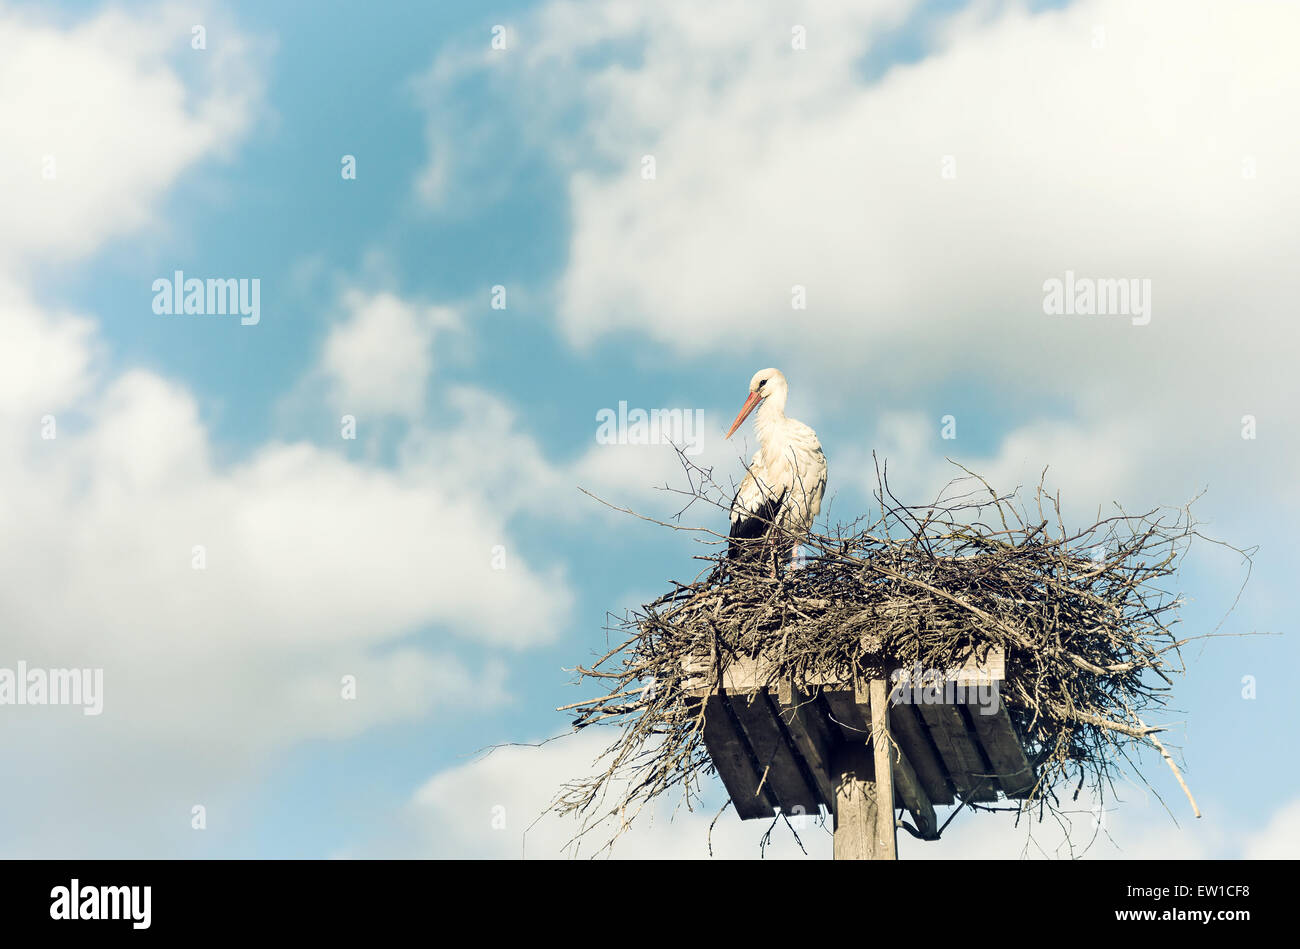 Cigüeña blanca (Ciconia ciconia) de pie en el nido contra un hermoso cielo con nubes blancas en el fondo Foto de stock